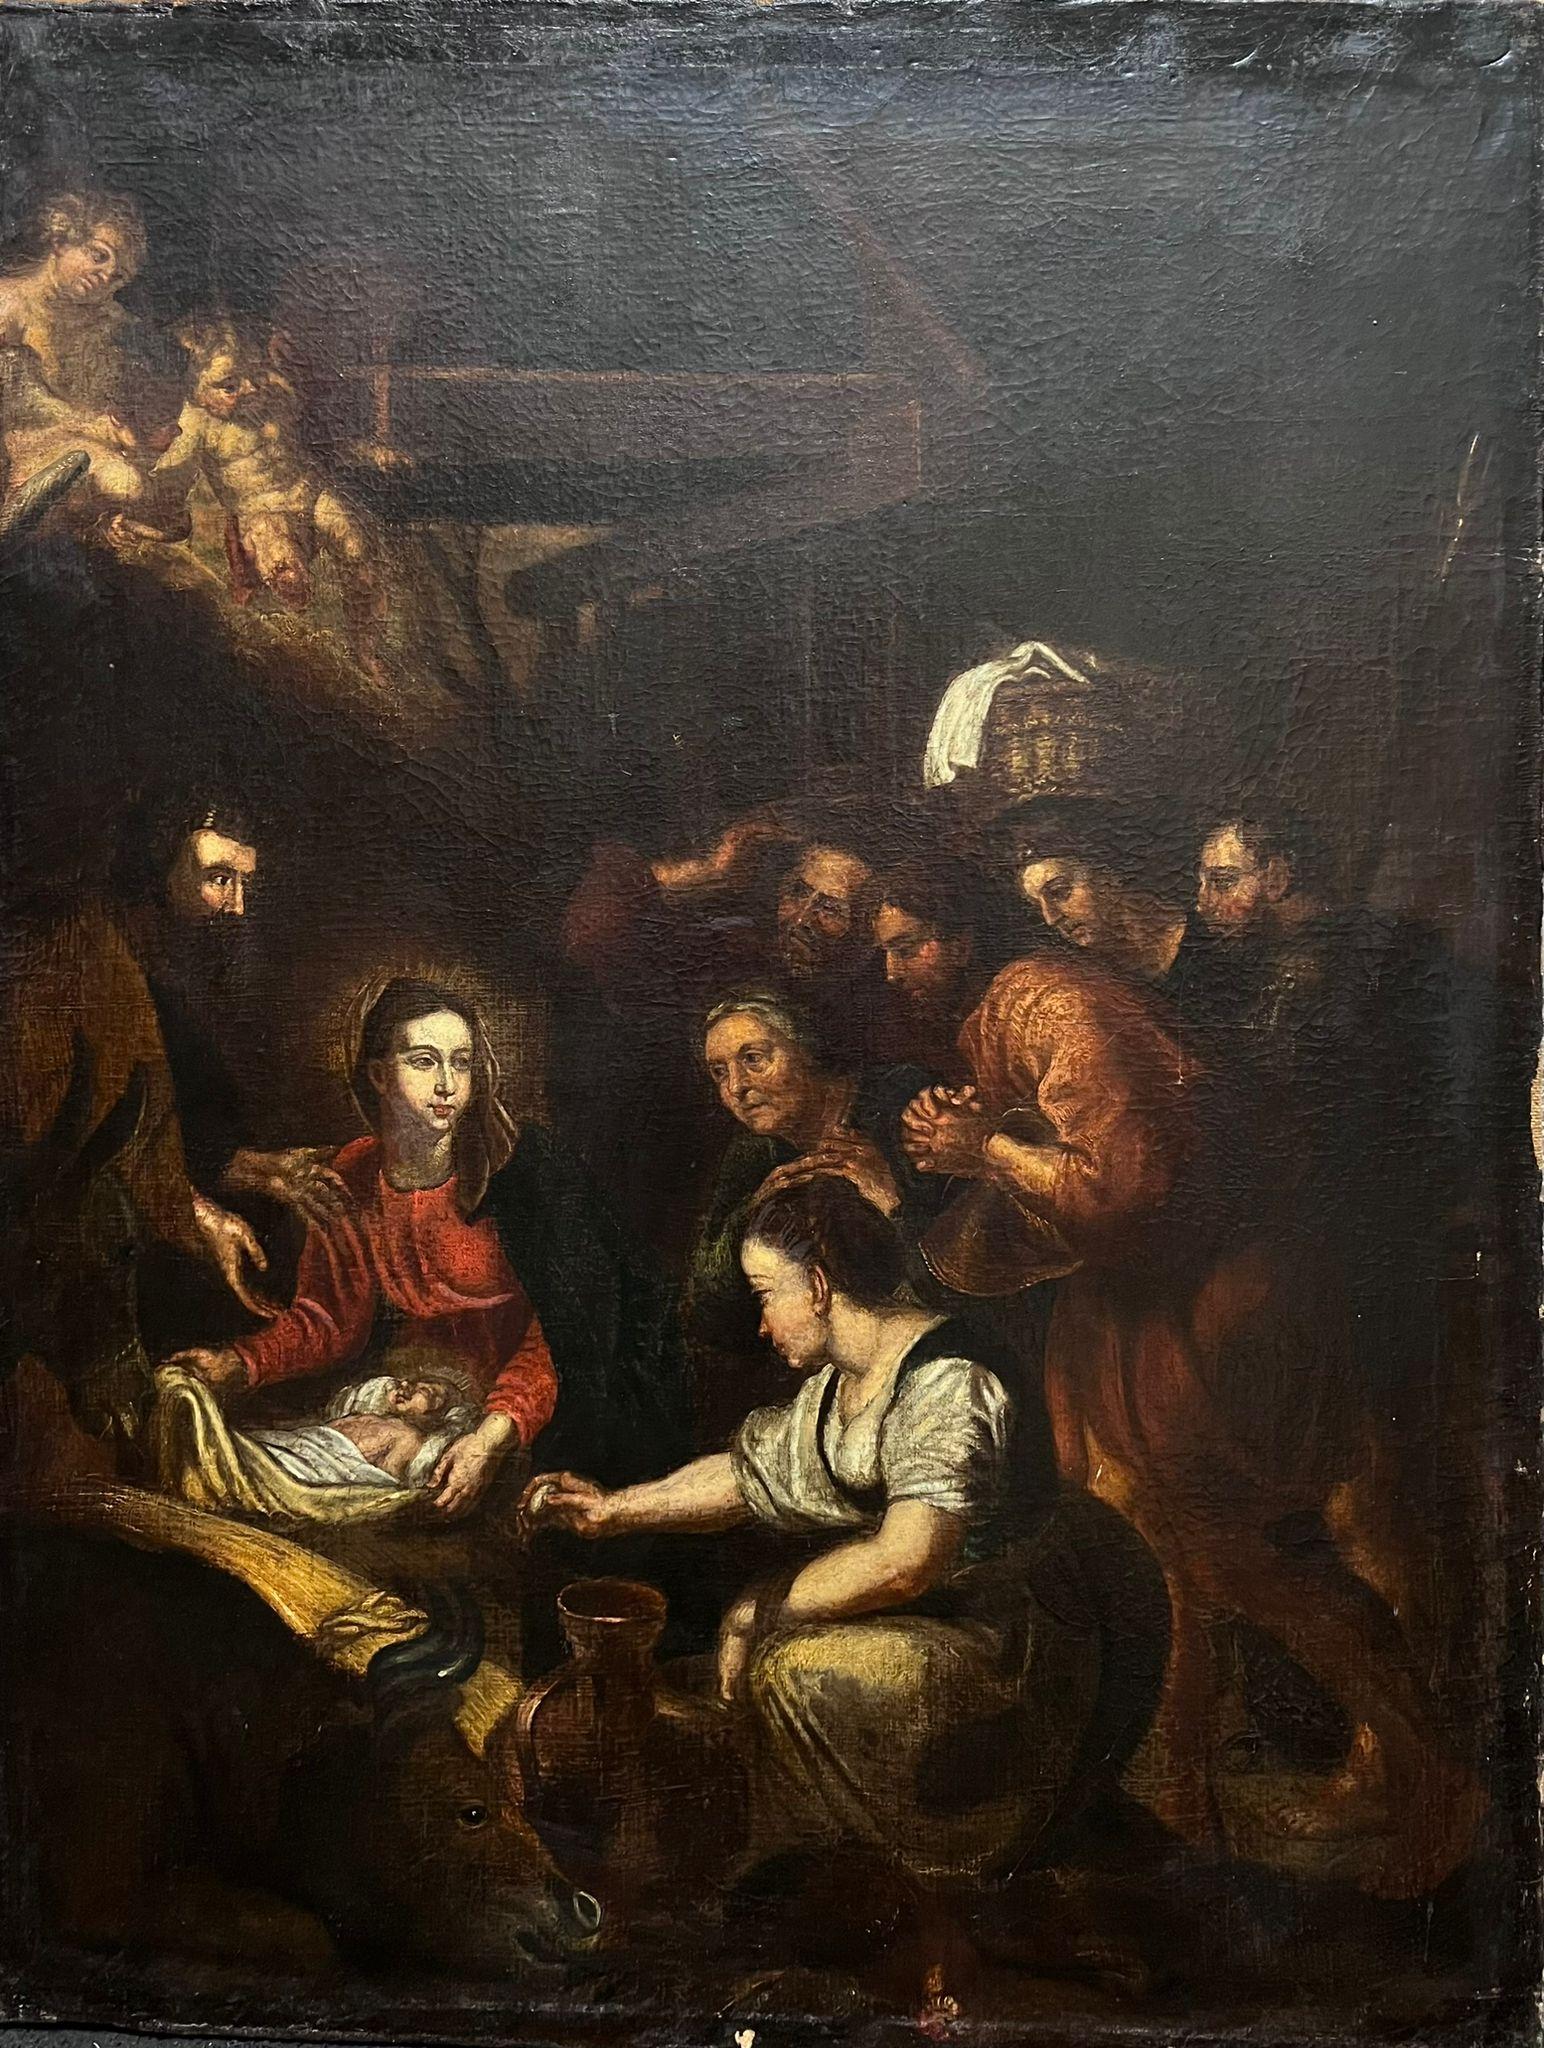 Sehr große 1700's Dutch Old Master Ölgemälde The Nativity Scene – Painting von 18th Dutch Old Master